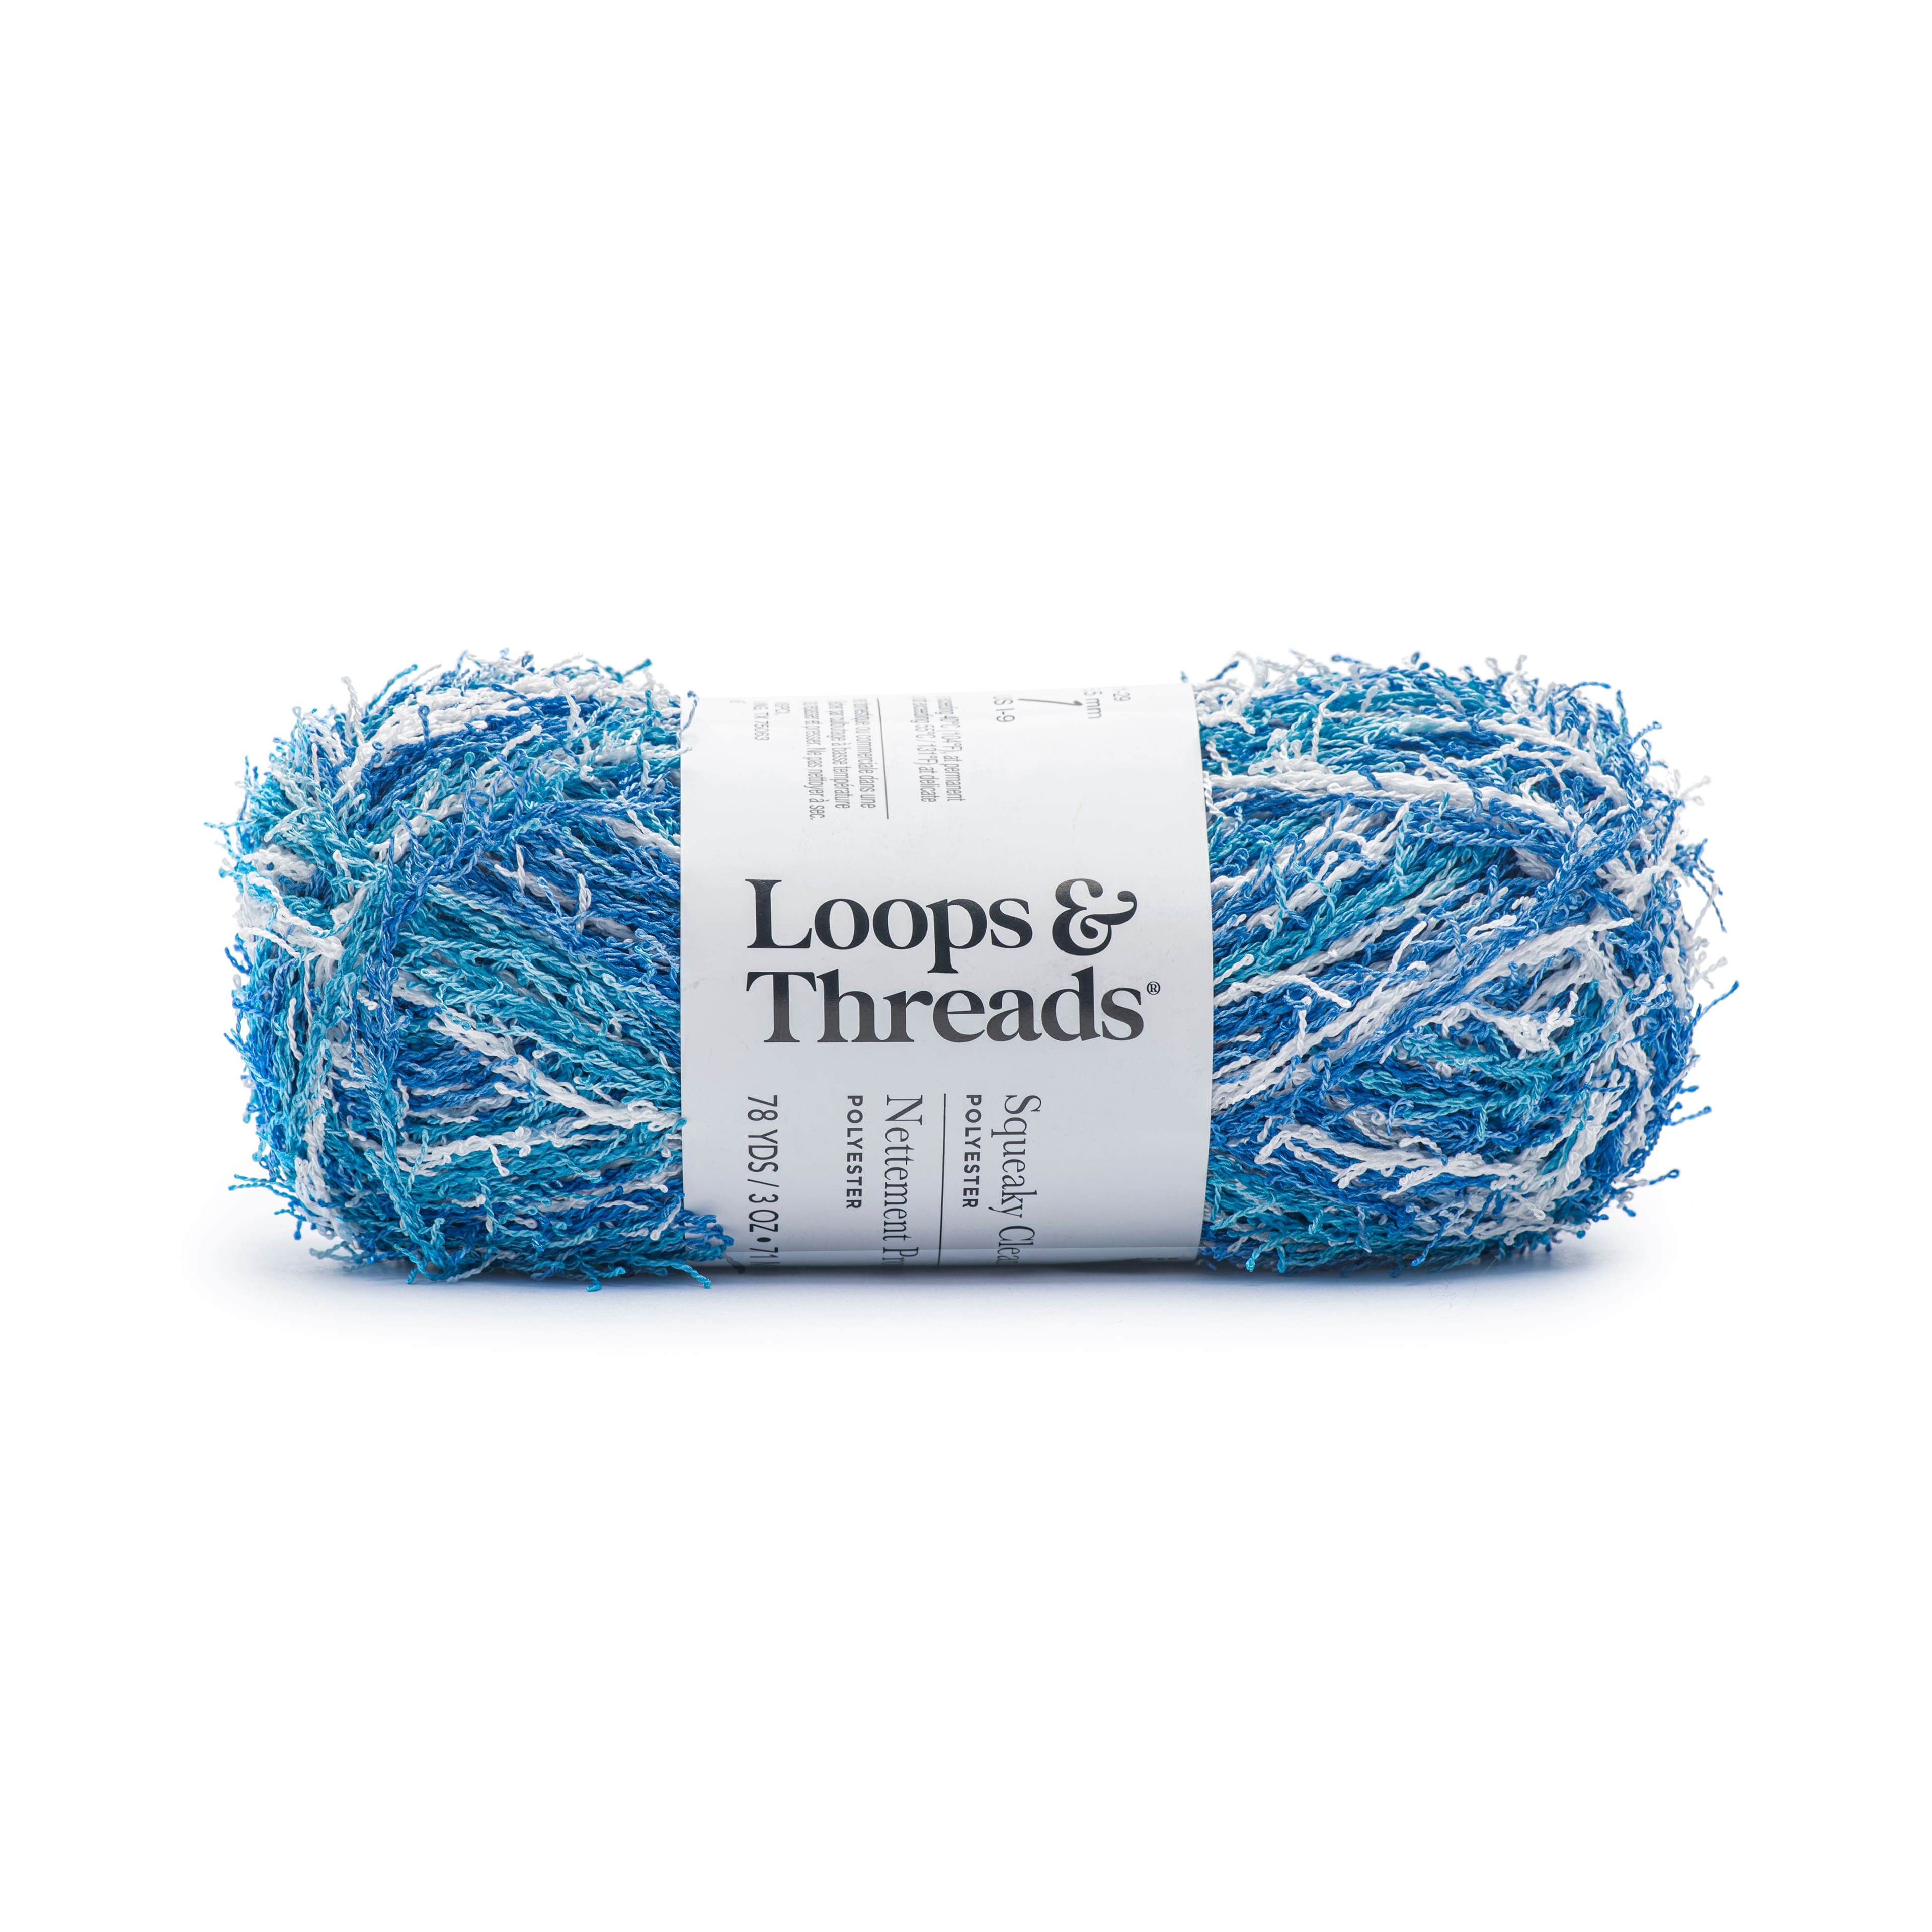 15 Pack: Squeaky Clean&#x2122; Prints Yarn by Loops &#x26; Threads&#xAE;